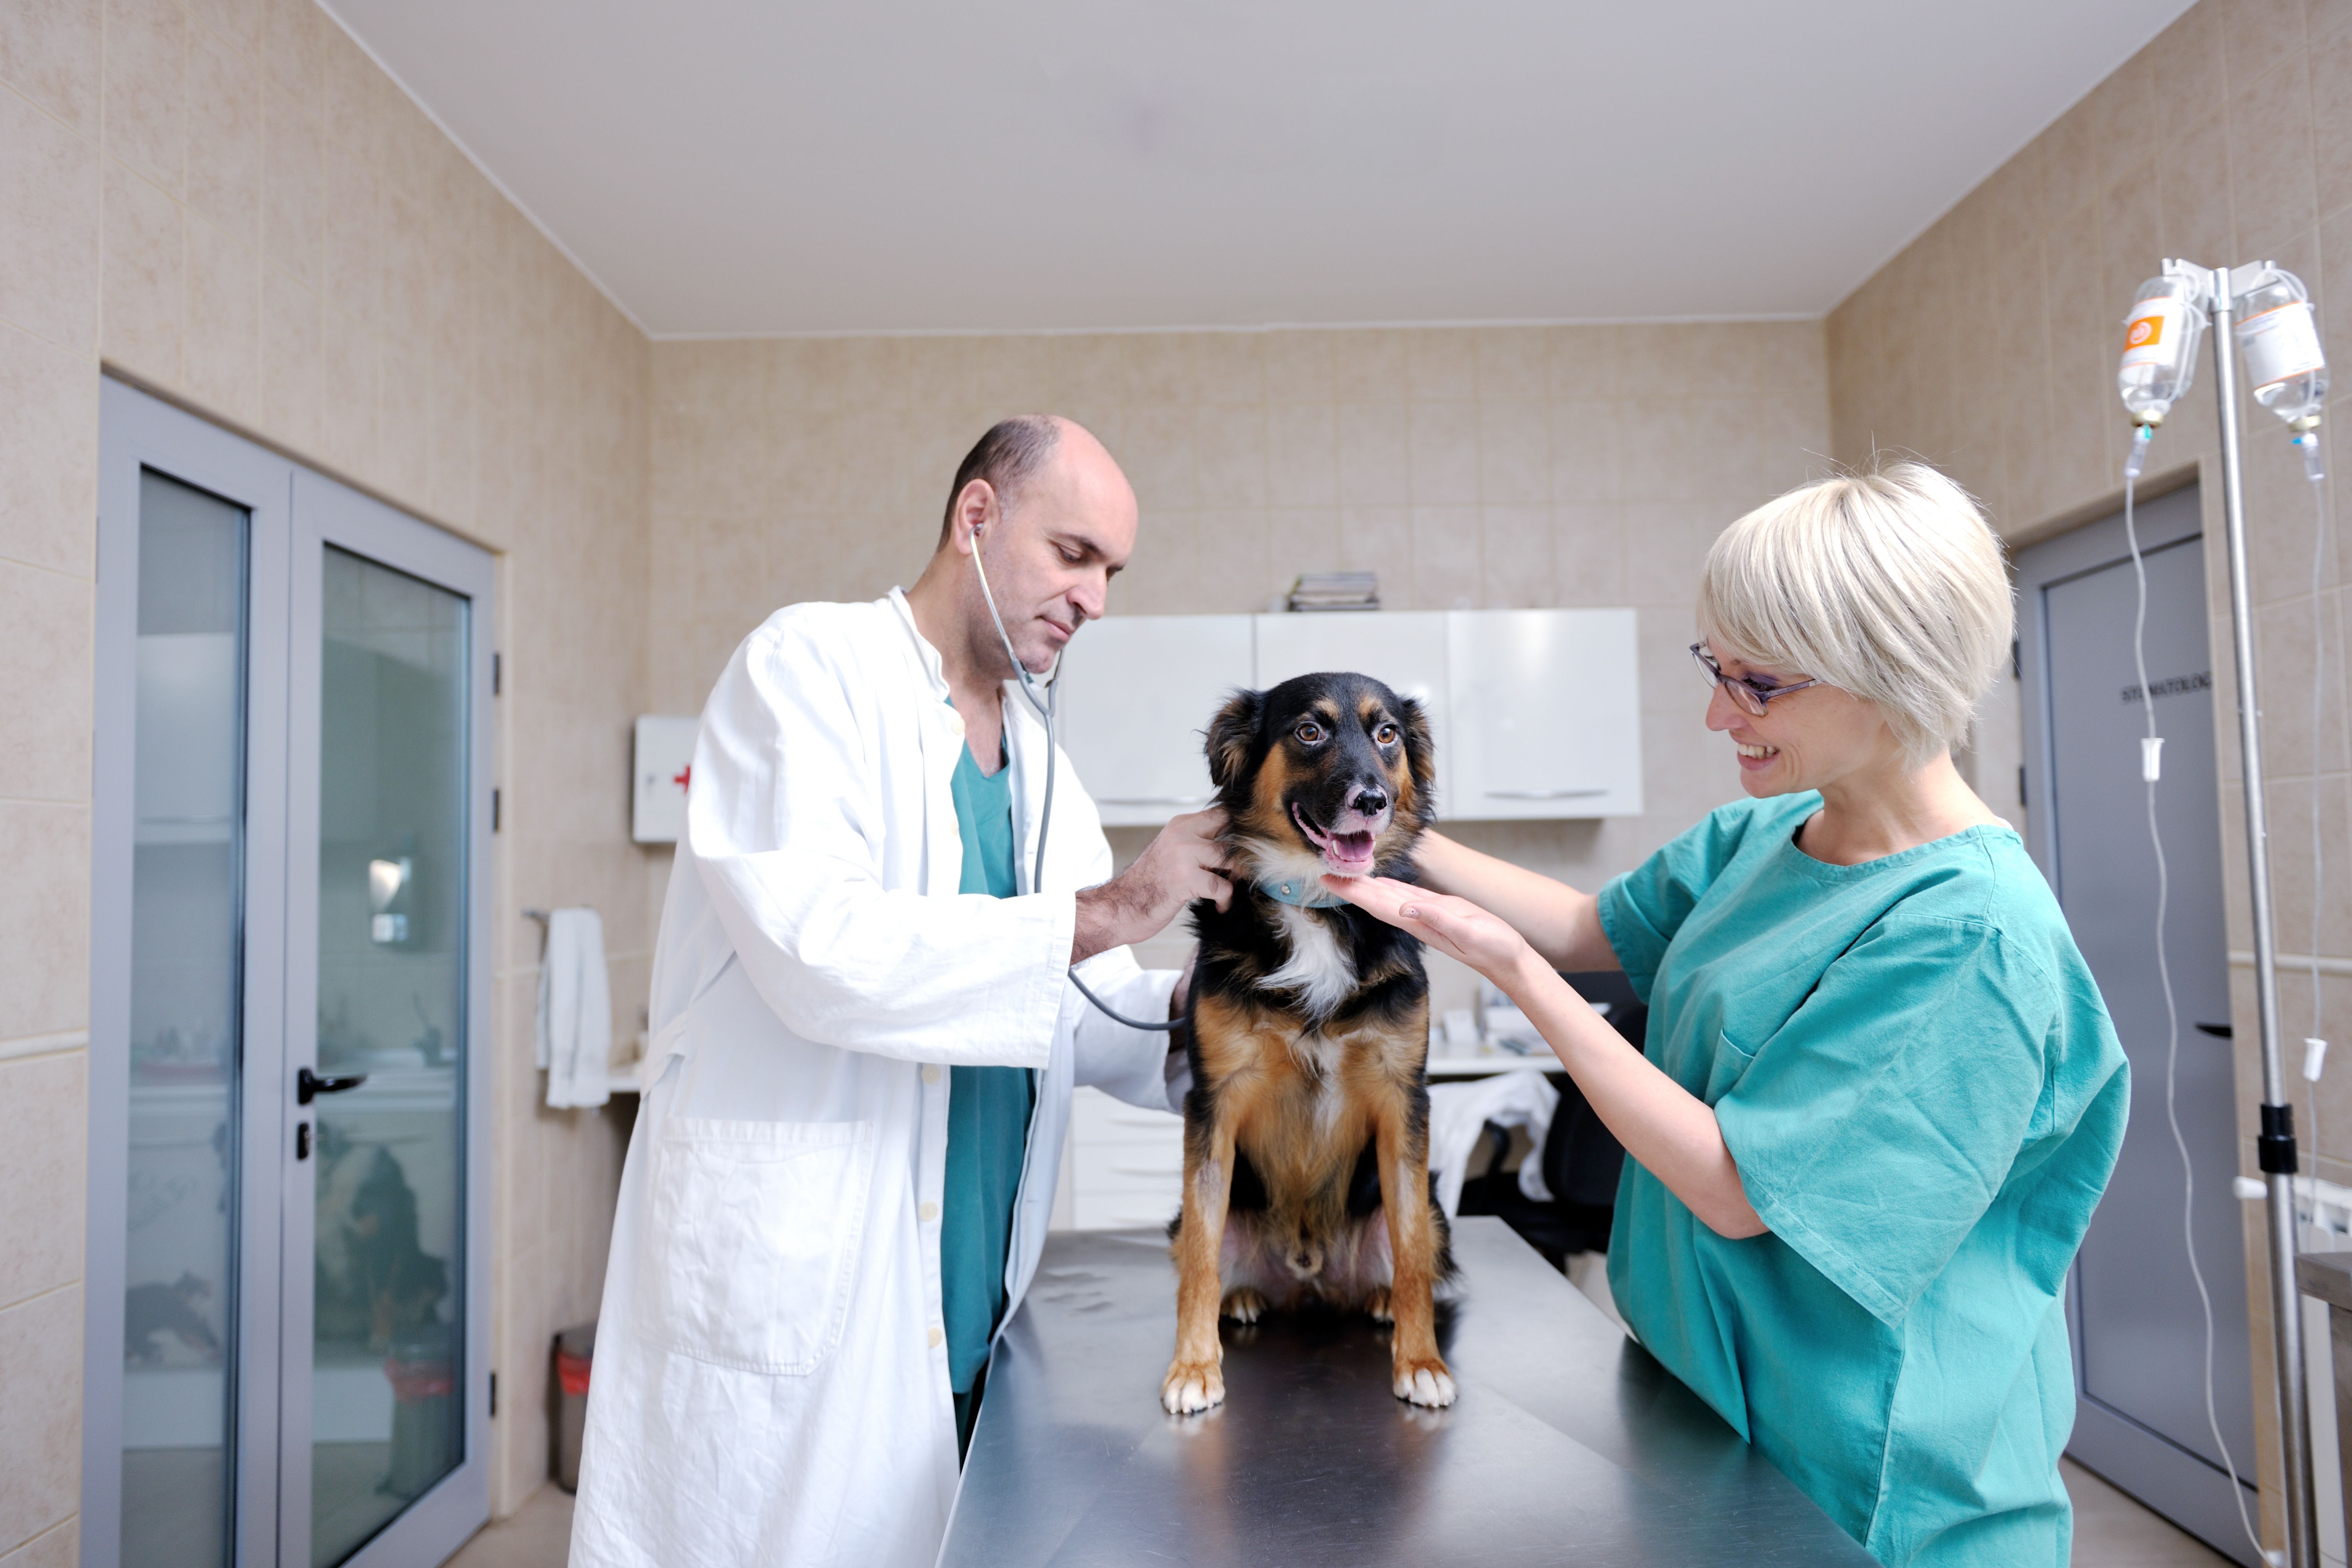 Ветеринарная грибоедова. Ветеринарная клиника. Собака в клинике. Ветеринар с собакой.